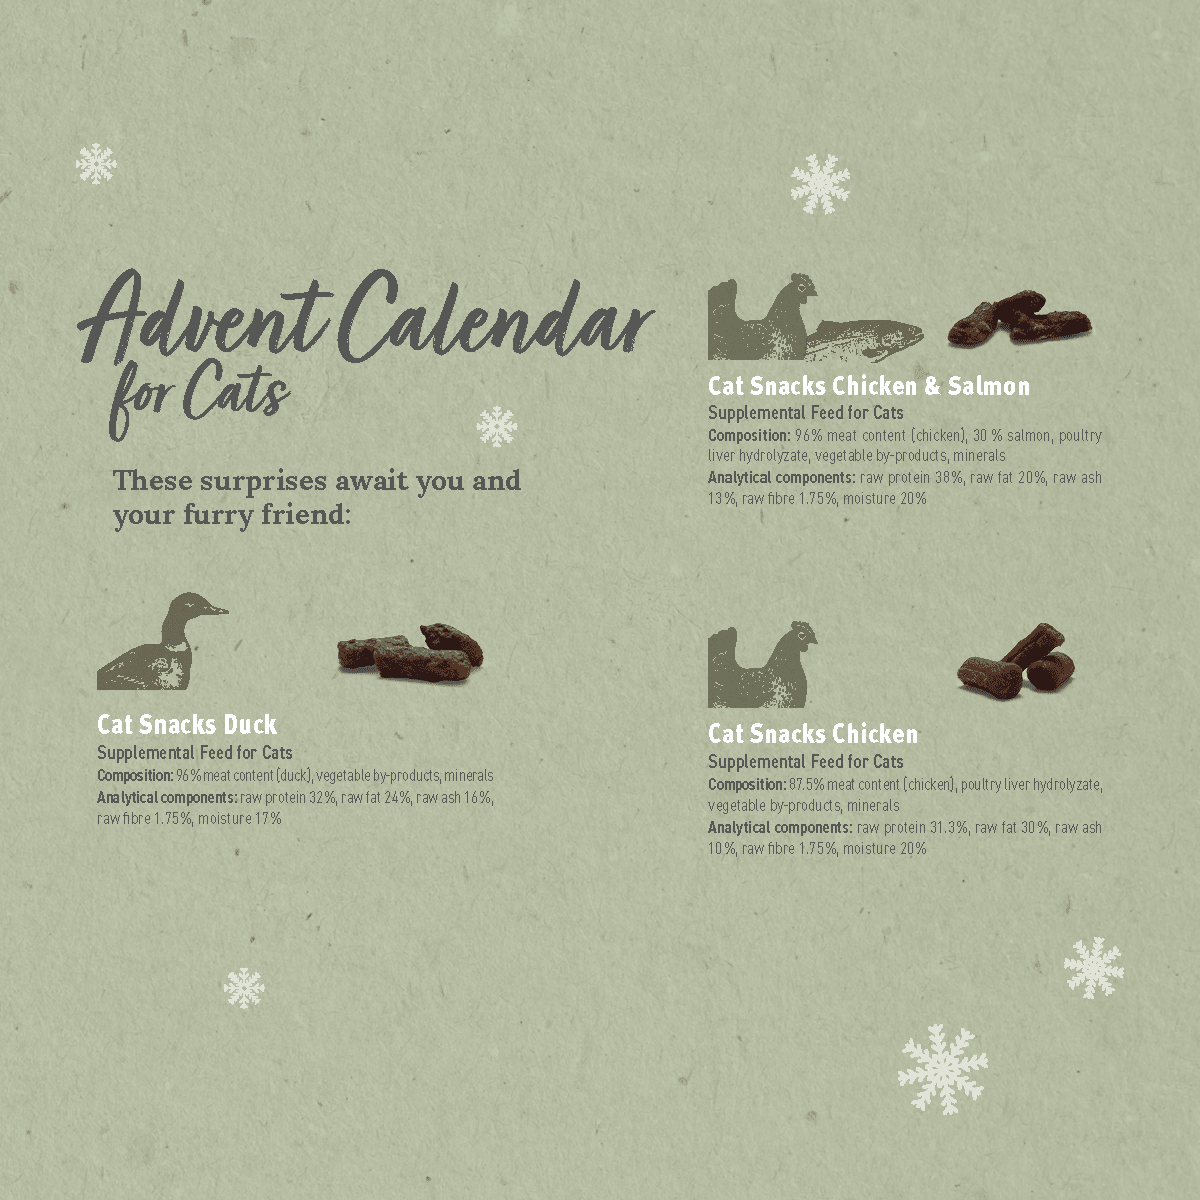 Advent Calendar "Merry Christmas" for Cats